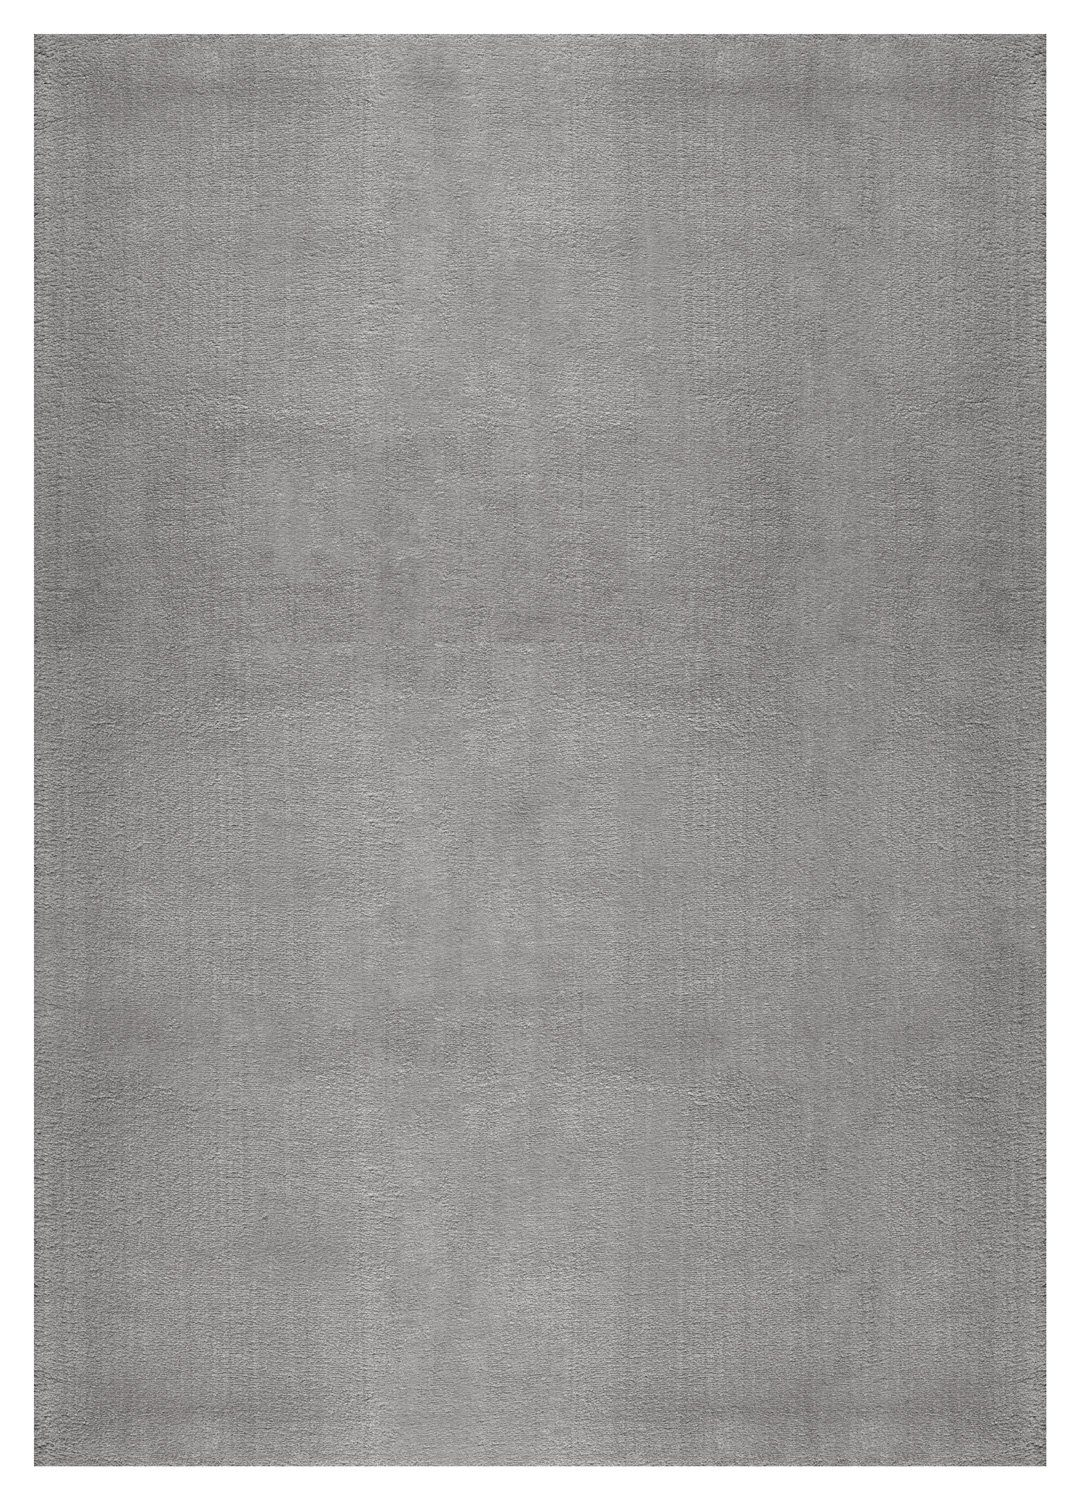 Hochflor-Teppich LOFT, 160 x 230 cm, Sandfarben, Polyester, Uni, merinos, rechteckig, Höhe: 19 mm, Rutschhemmend